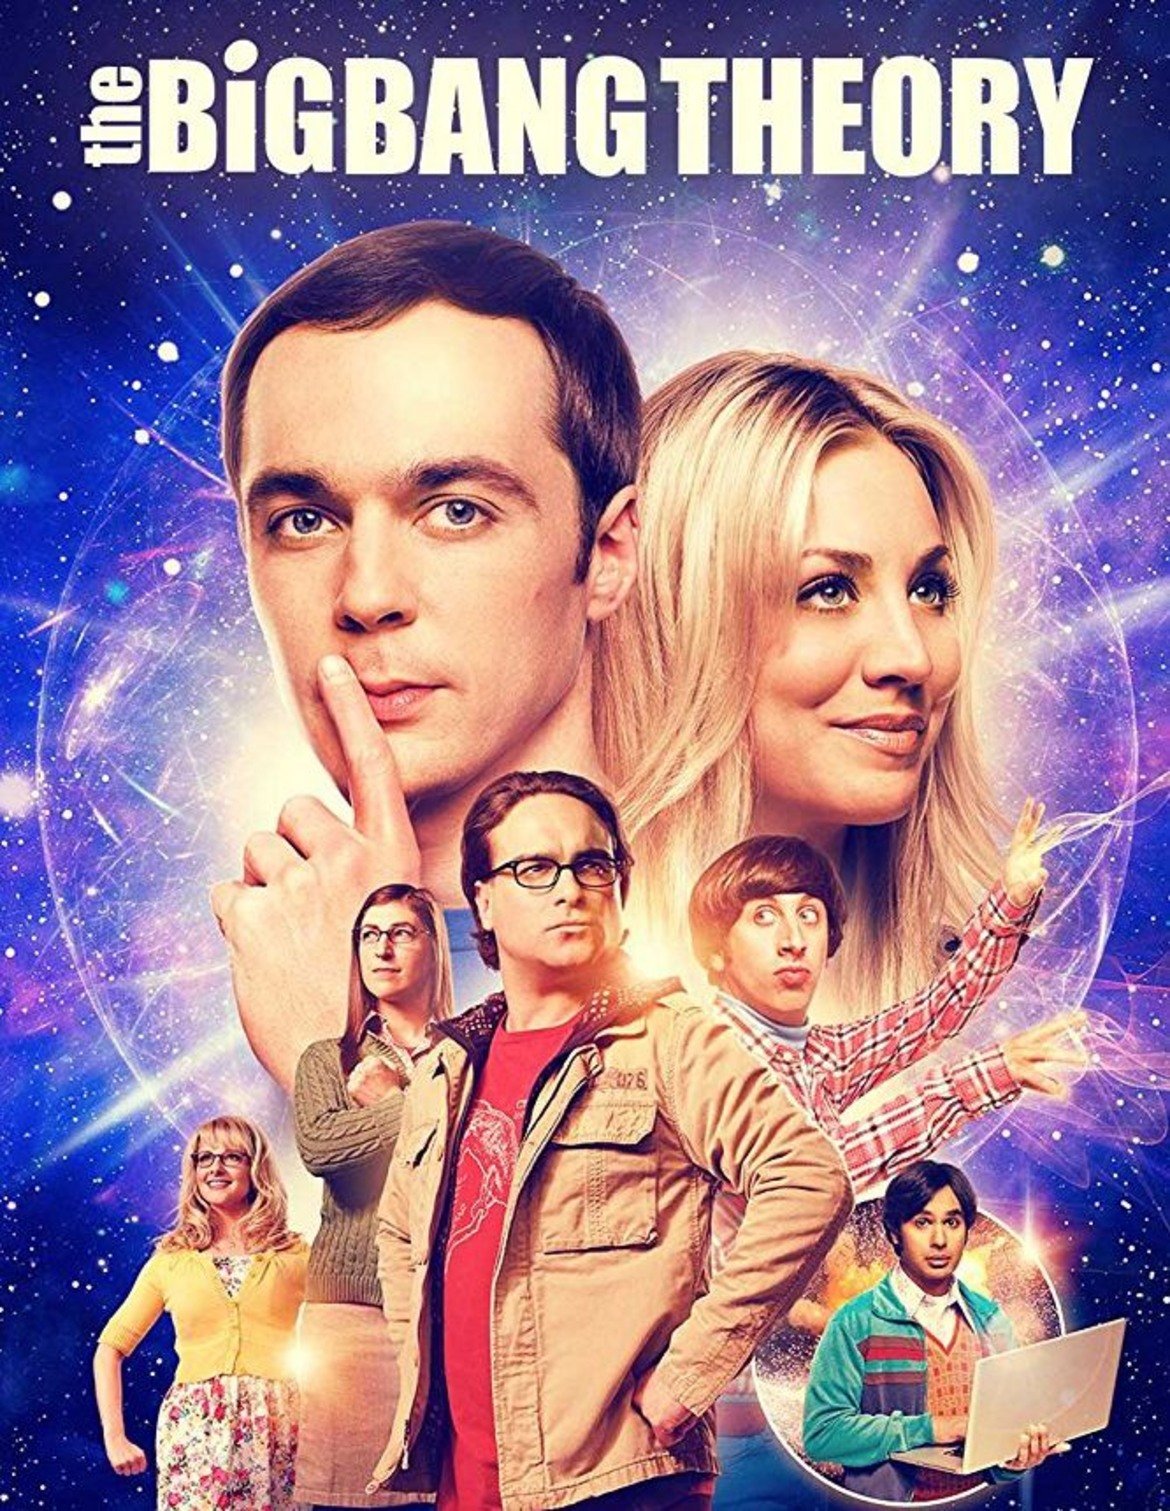 3. The Big Bang Theory
(място през 2017-а: 4)